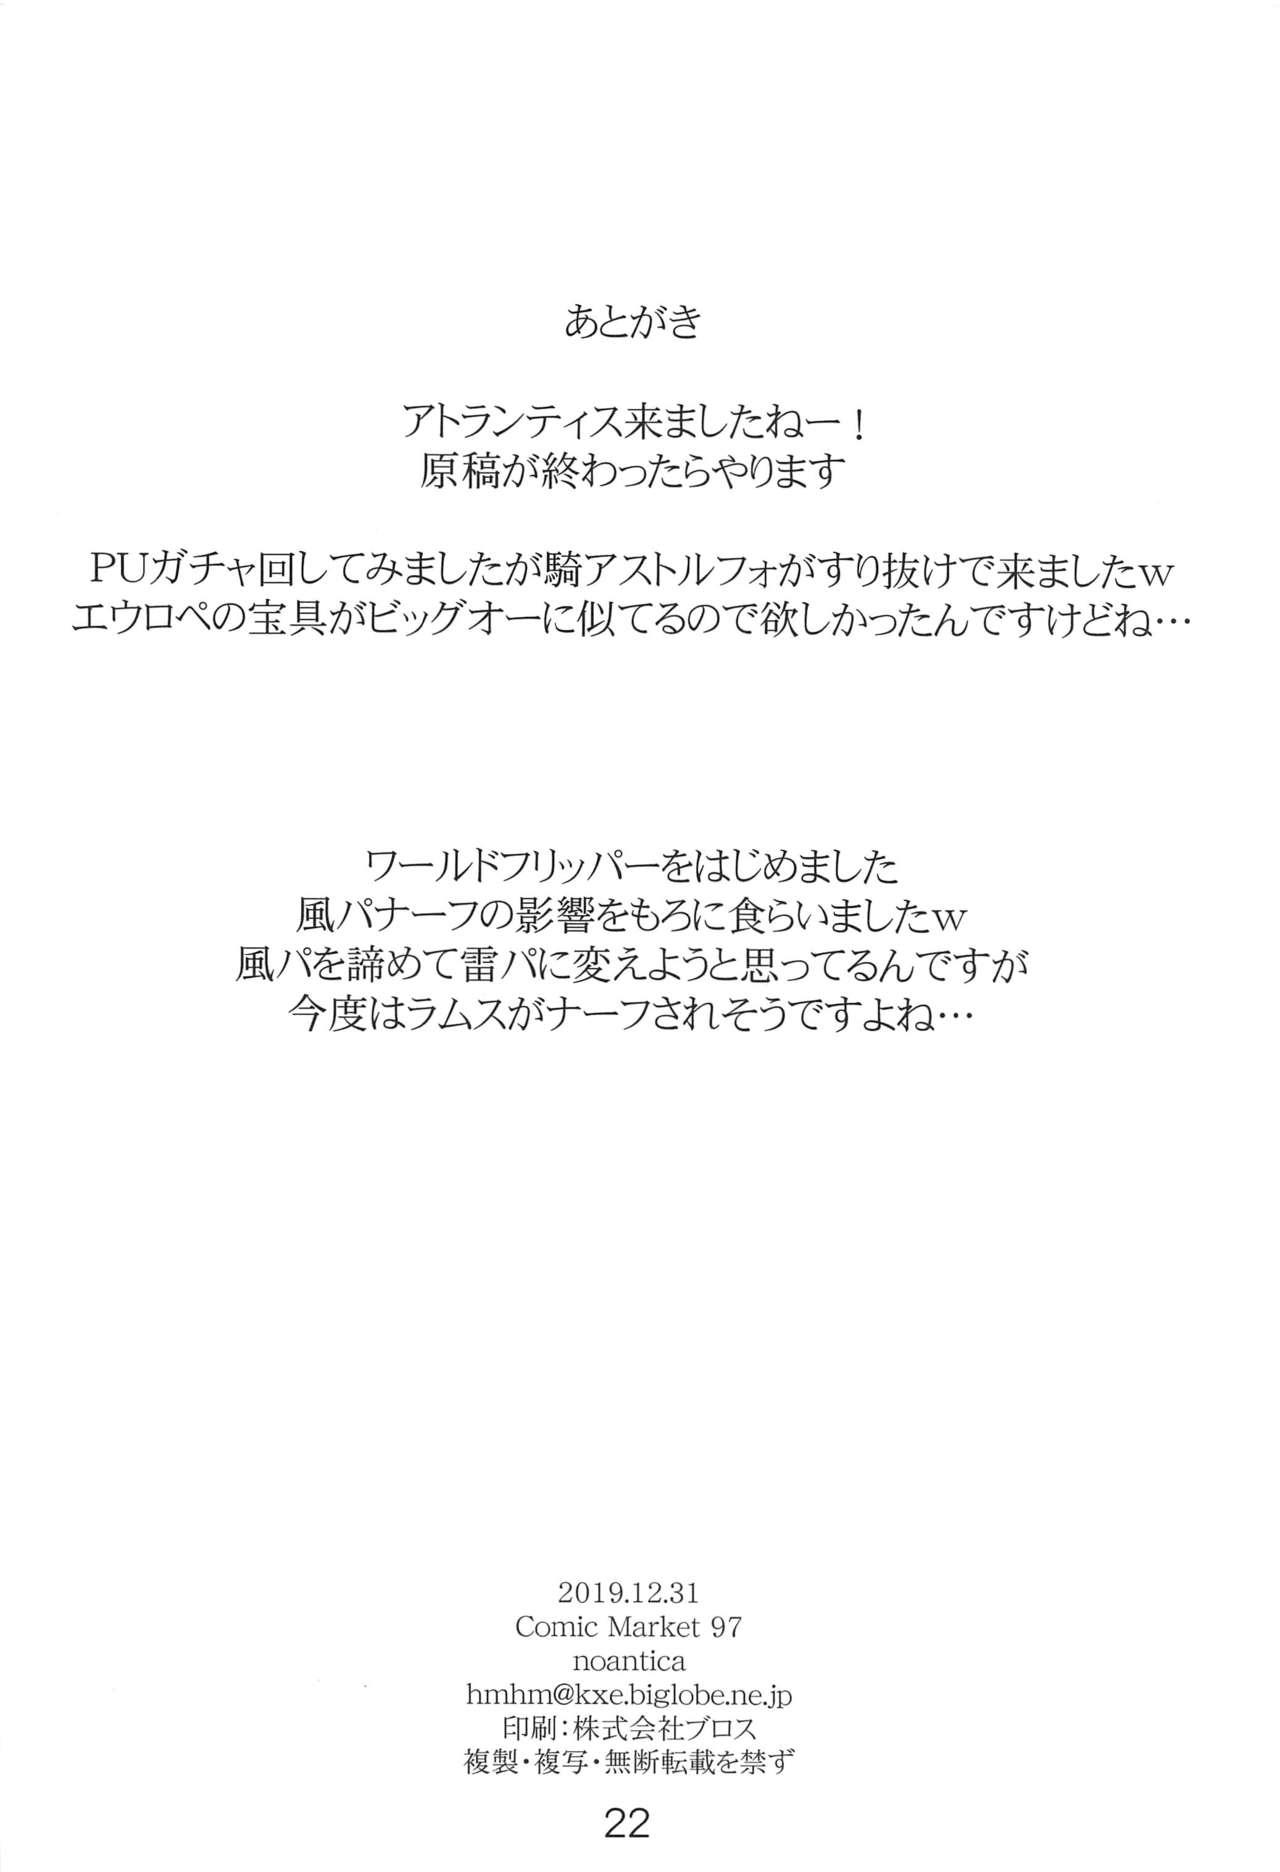 Handjob "Senpai... Ashita wa Asa kara Rayshift nan desu kedo..." - Fate grand order Game - Page 21